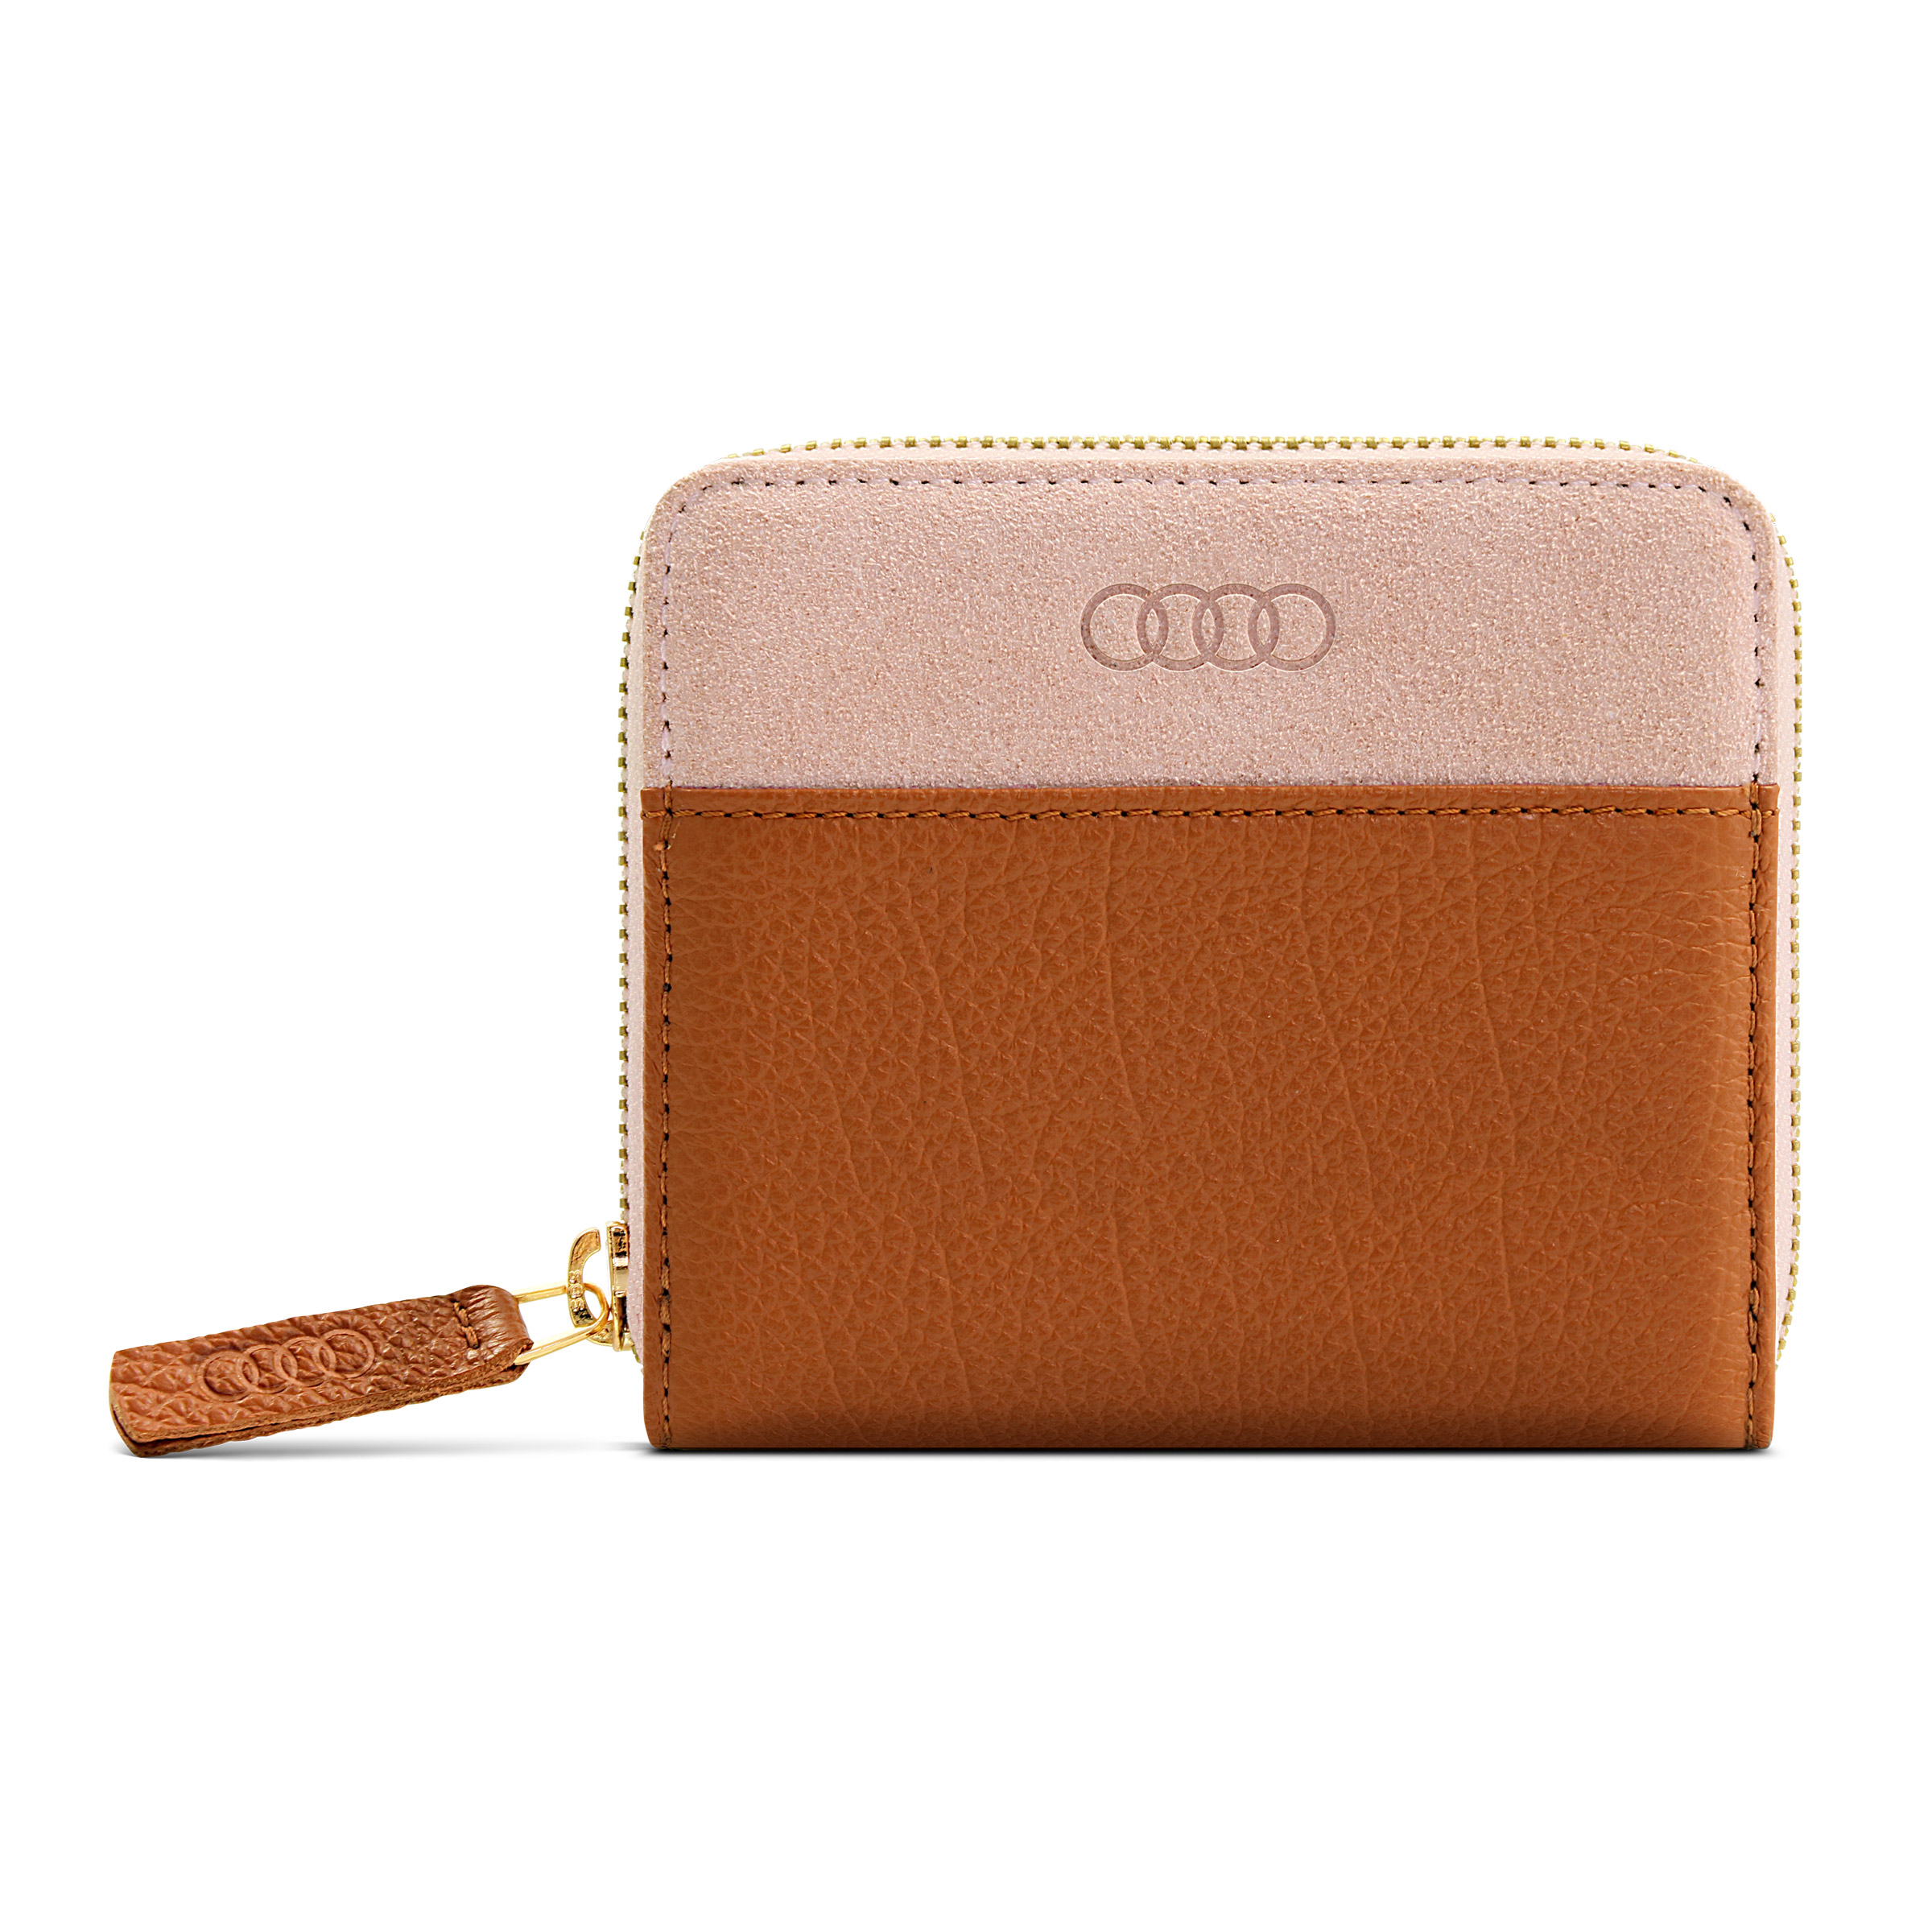 Audi Geldbörse Leder klein für Damen braun-rosé